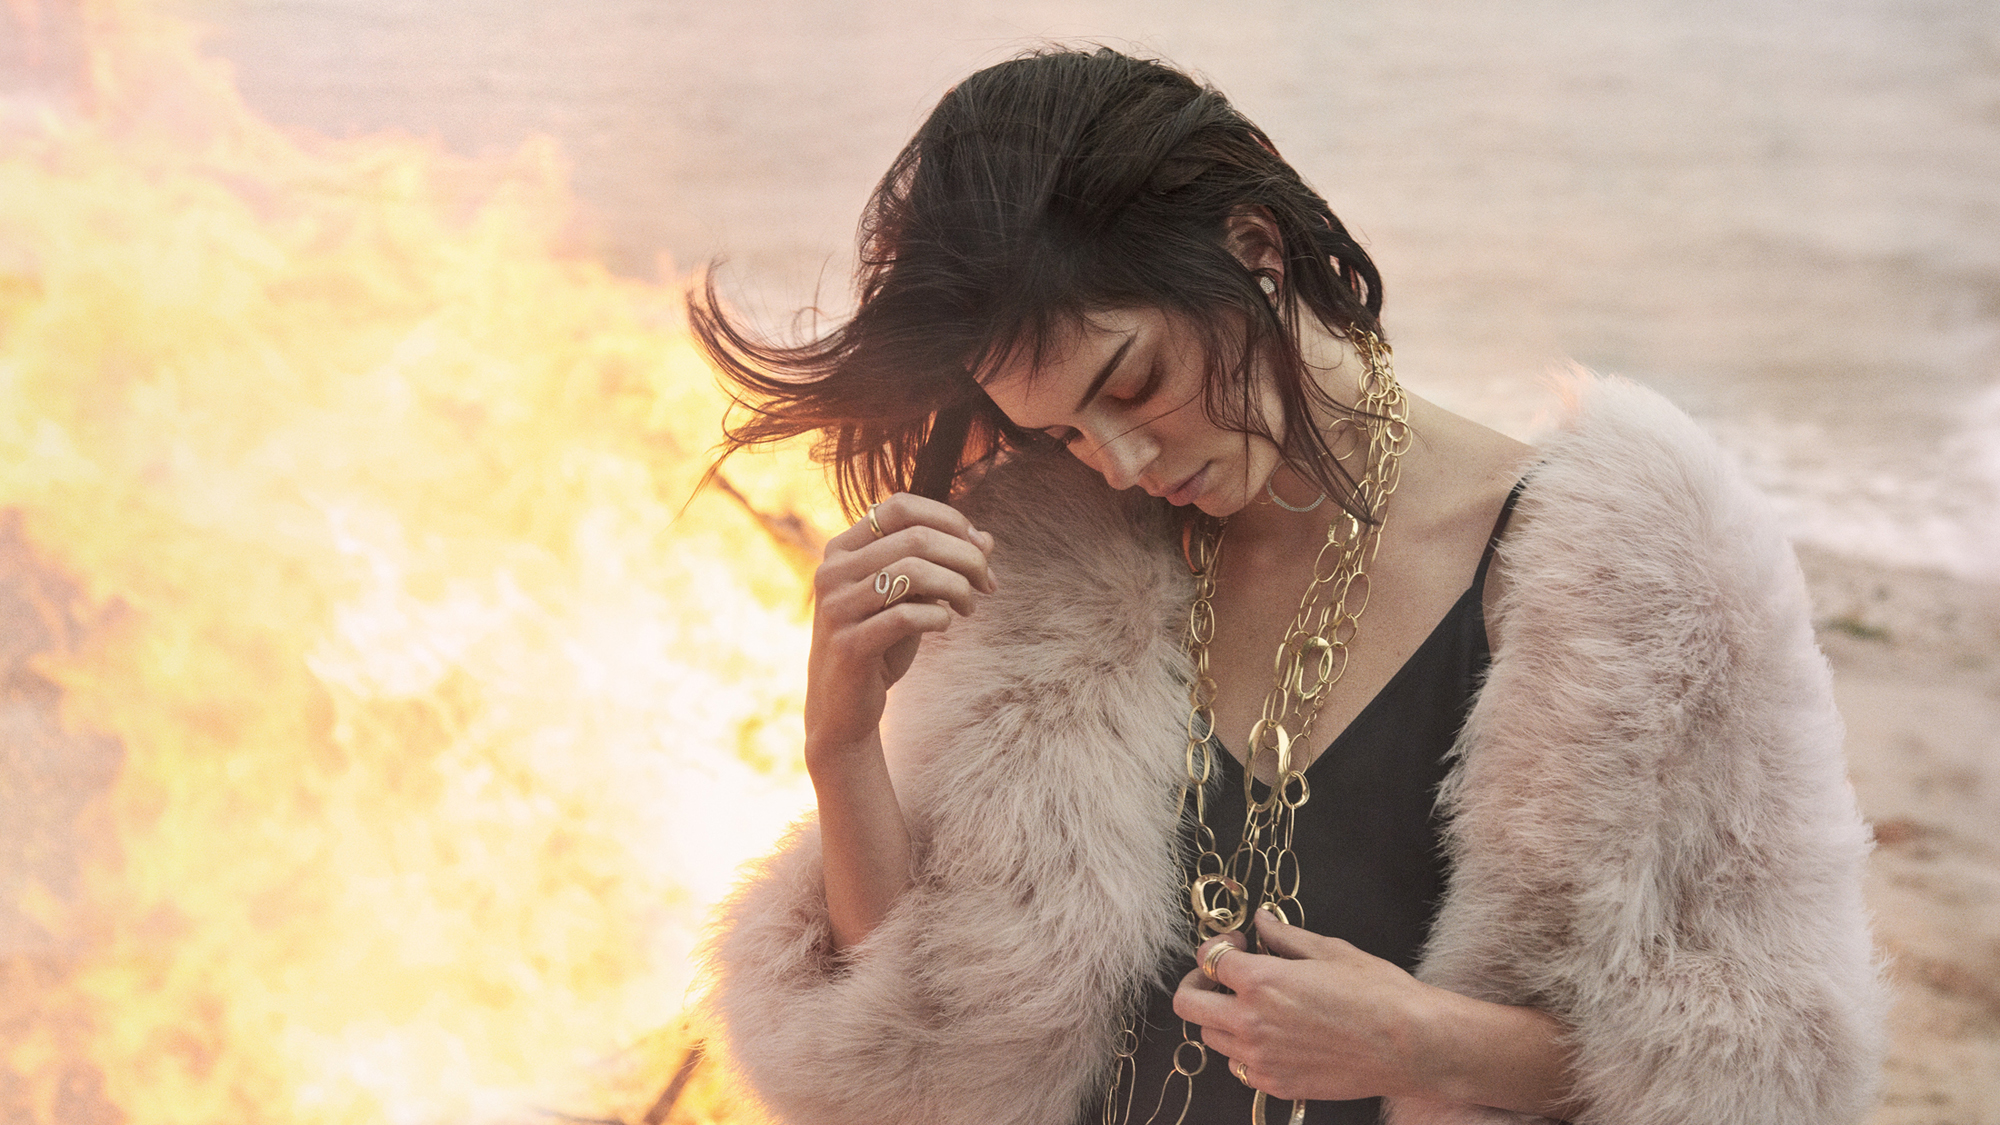 People 2000x1125 Kendall Jenner women model brunette fur coats fire